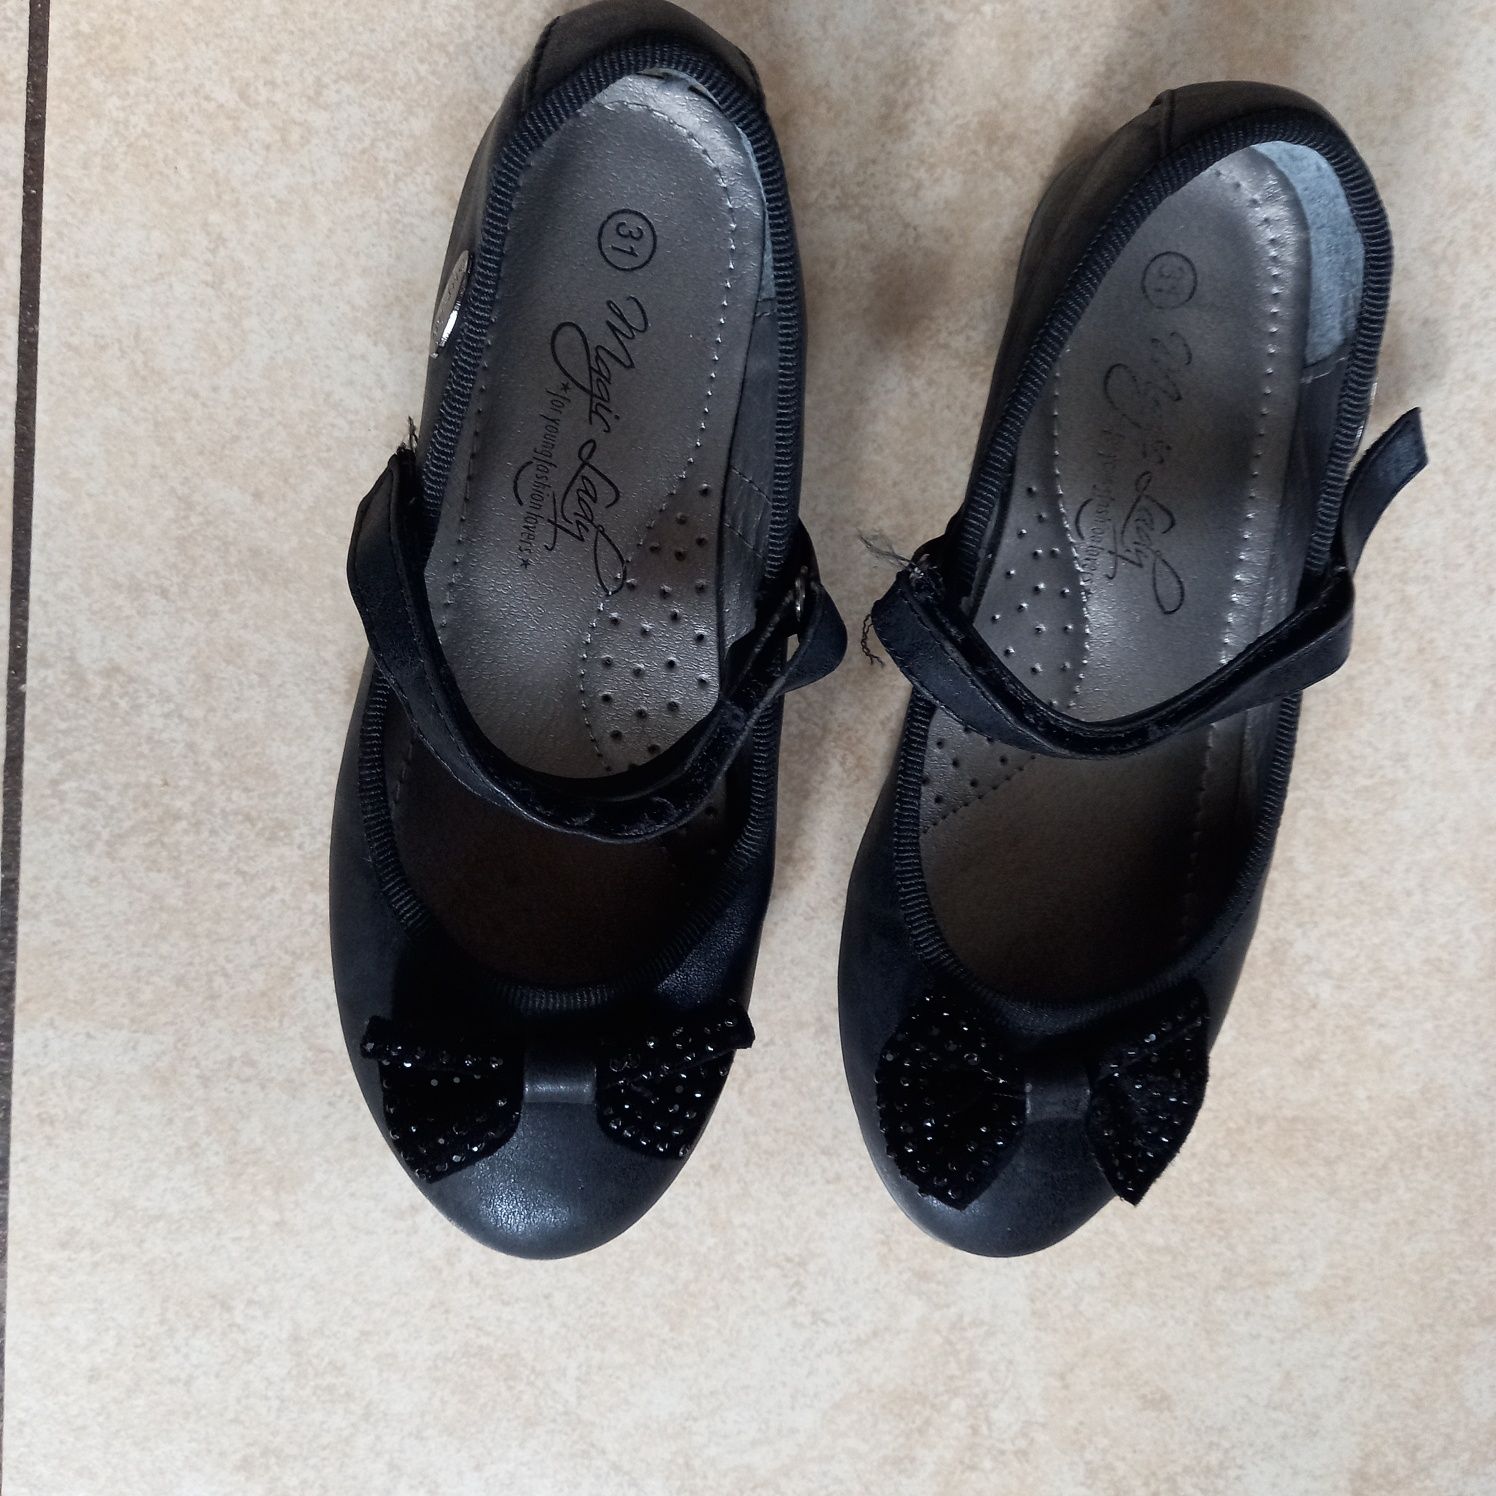 Baleriny buty dziewczęce pantofelki na galowo rozm. 31